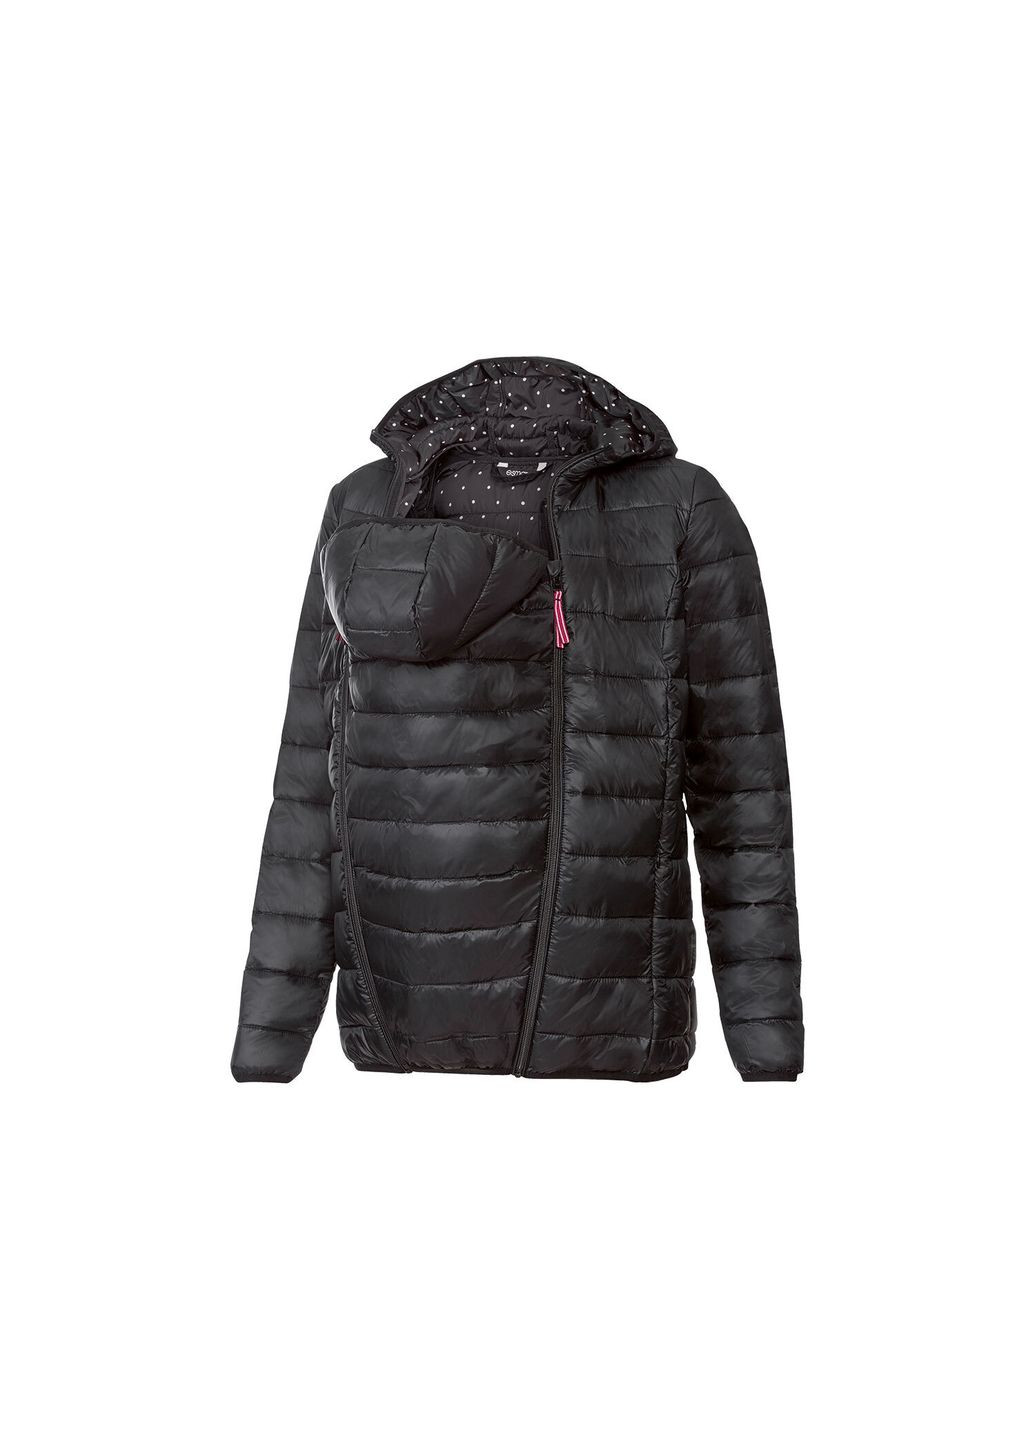 Чорна демісезонна куртка демісезонна для вагітних і слінгокуртка 3 в 1 для жінки bionic-finish® eco 357573 34(xs) чорний куртка-піджак Esmara